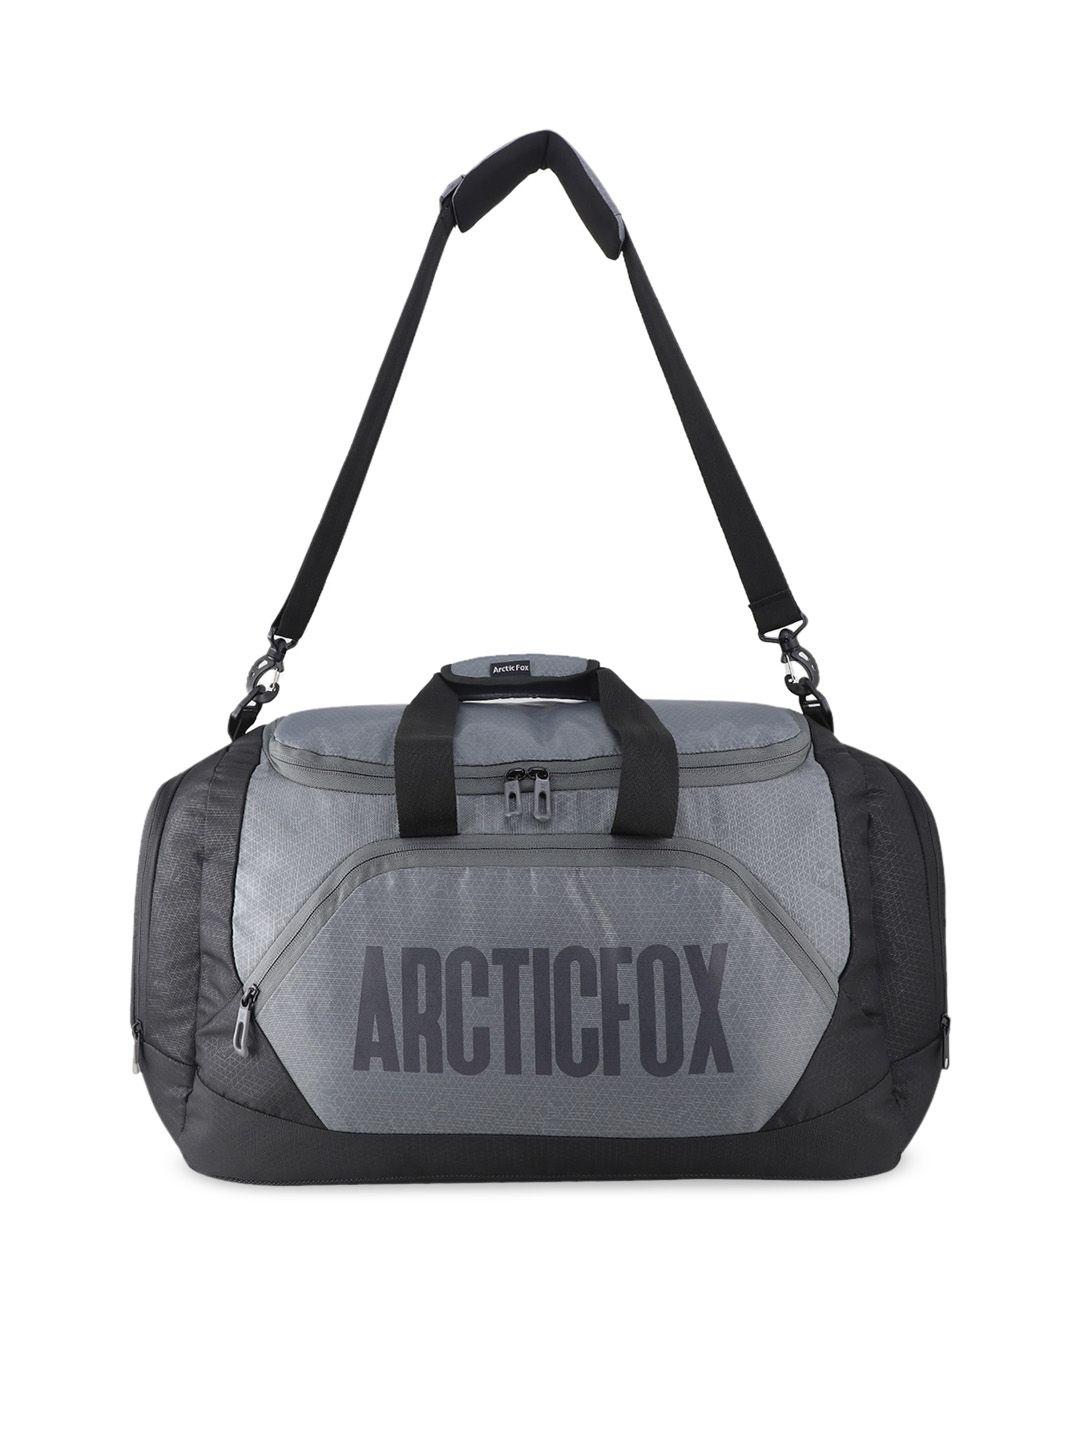 arctic fox grey & black printed travel duffel bag